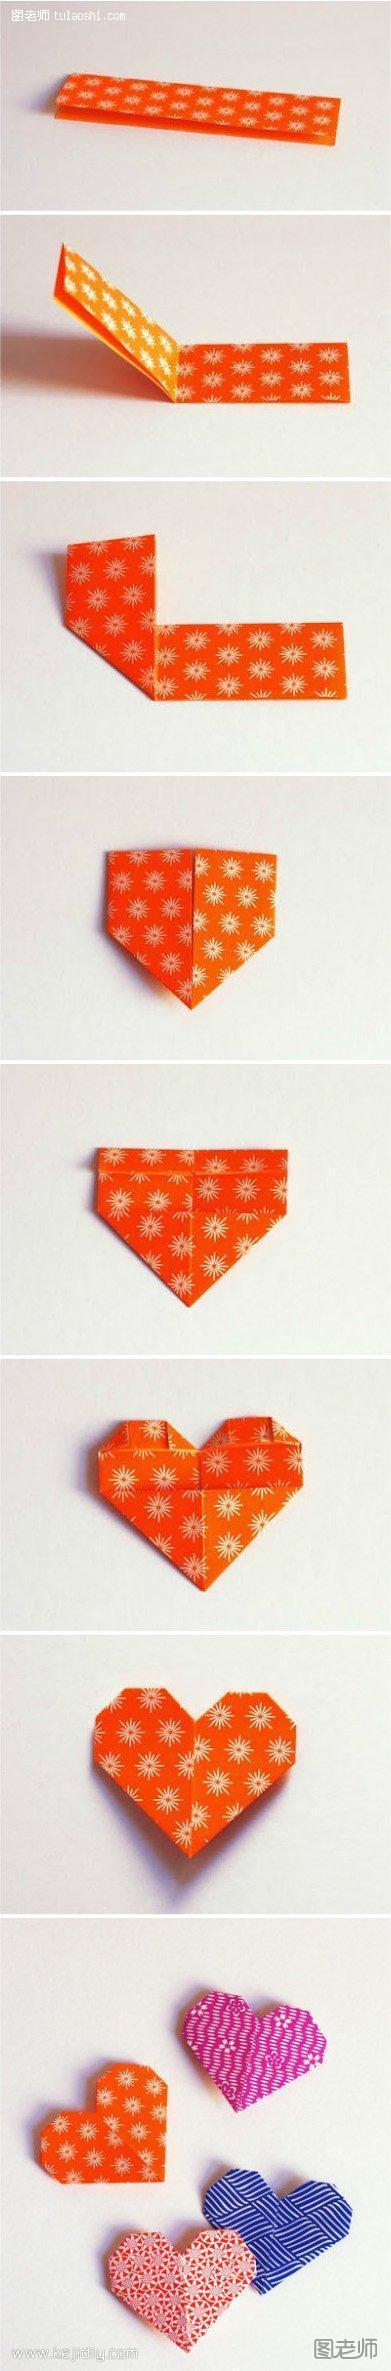 漂亮的心形折纸 折纸心形的方法教程- www.kejidiy.com